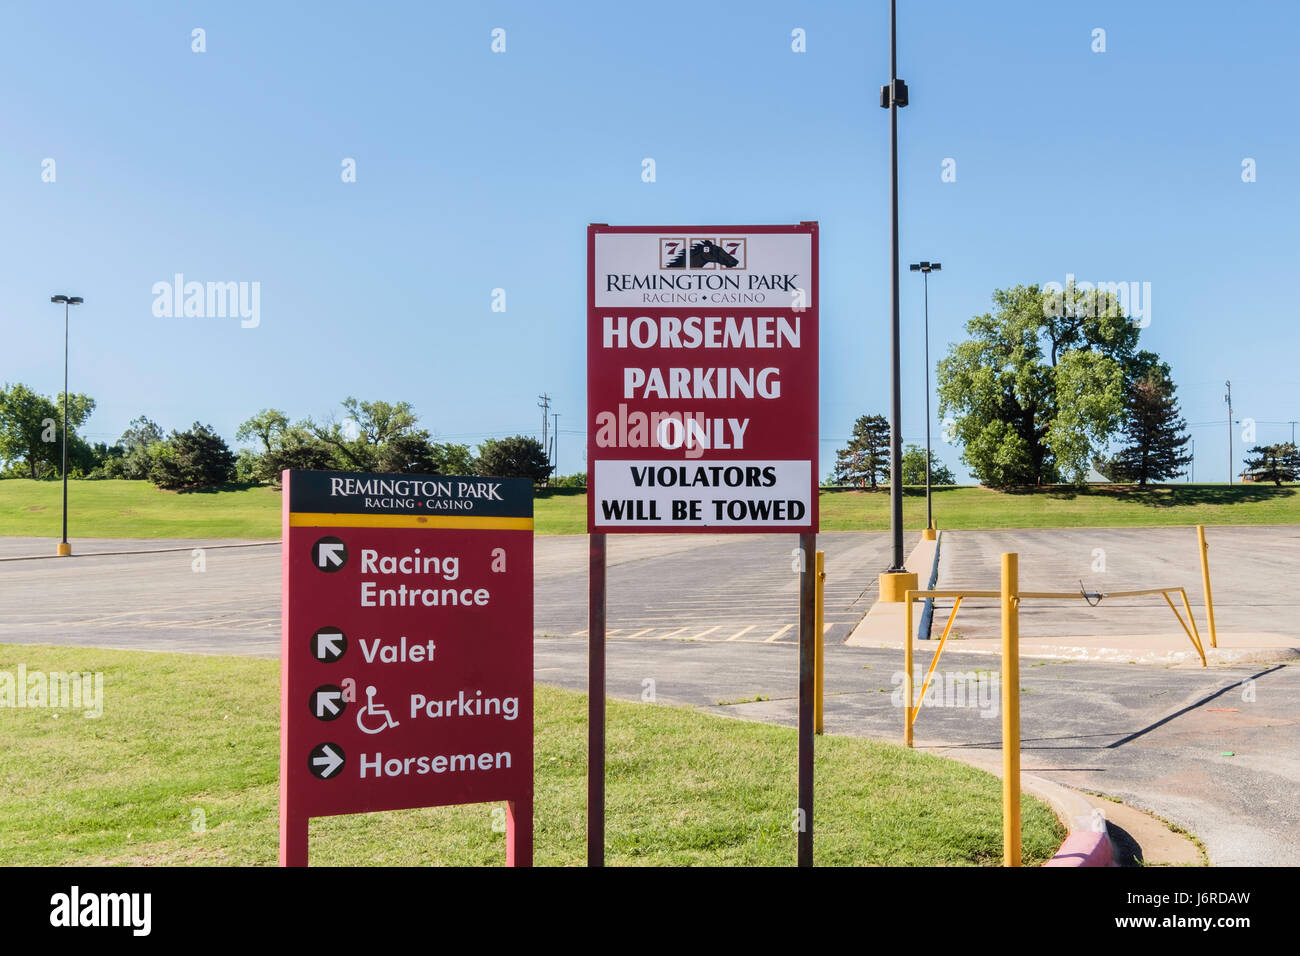 Remington Park, ein Pferderennen Anlage. Zeichen mit Parkplatz, Eingang, Reiter nur parken. Oklahoma City, Oklahoma, USA. Stockfoto